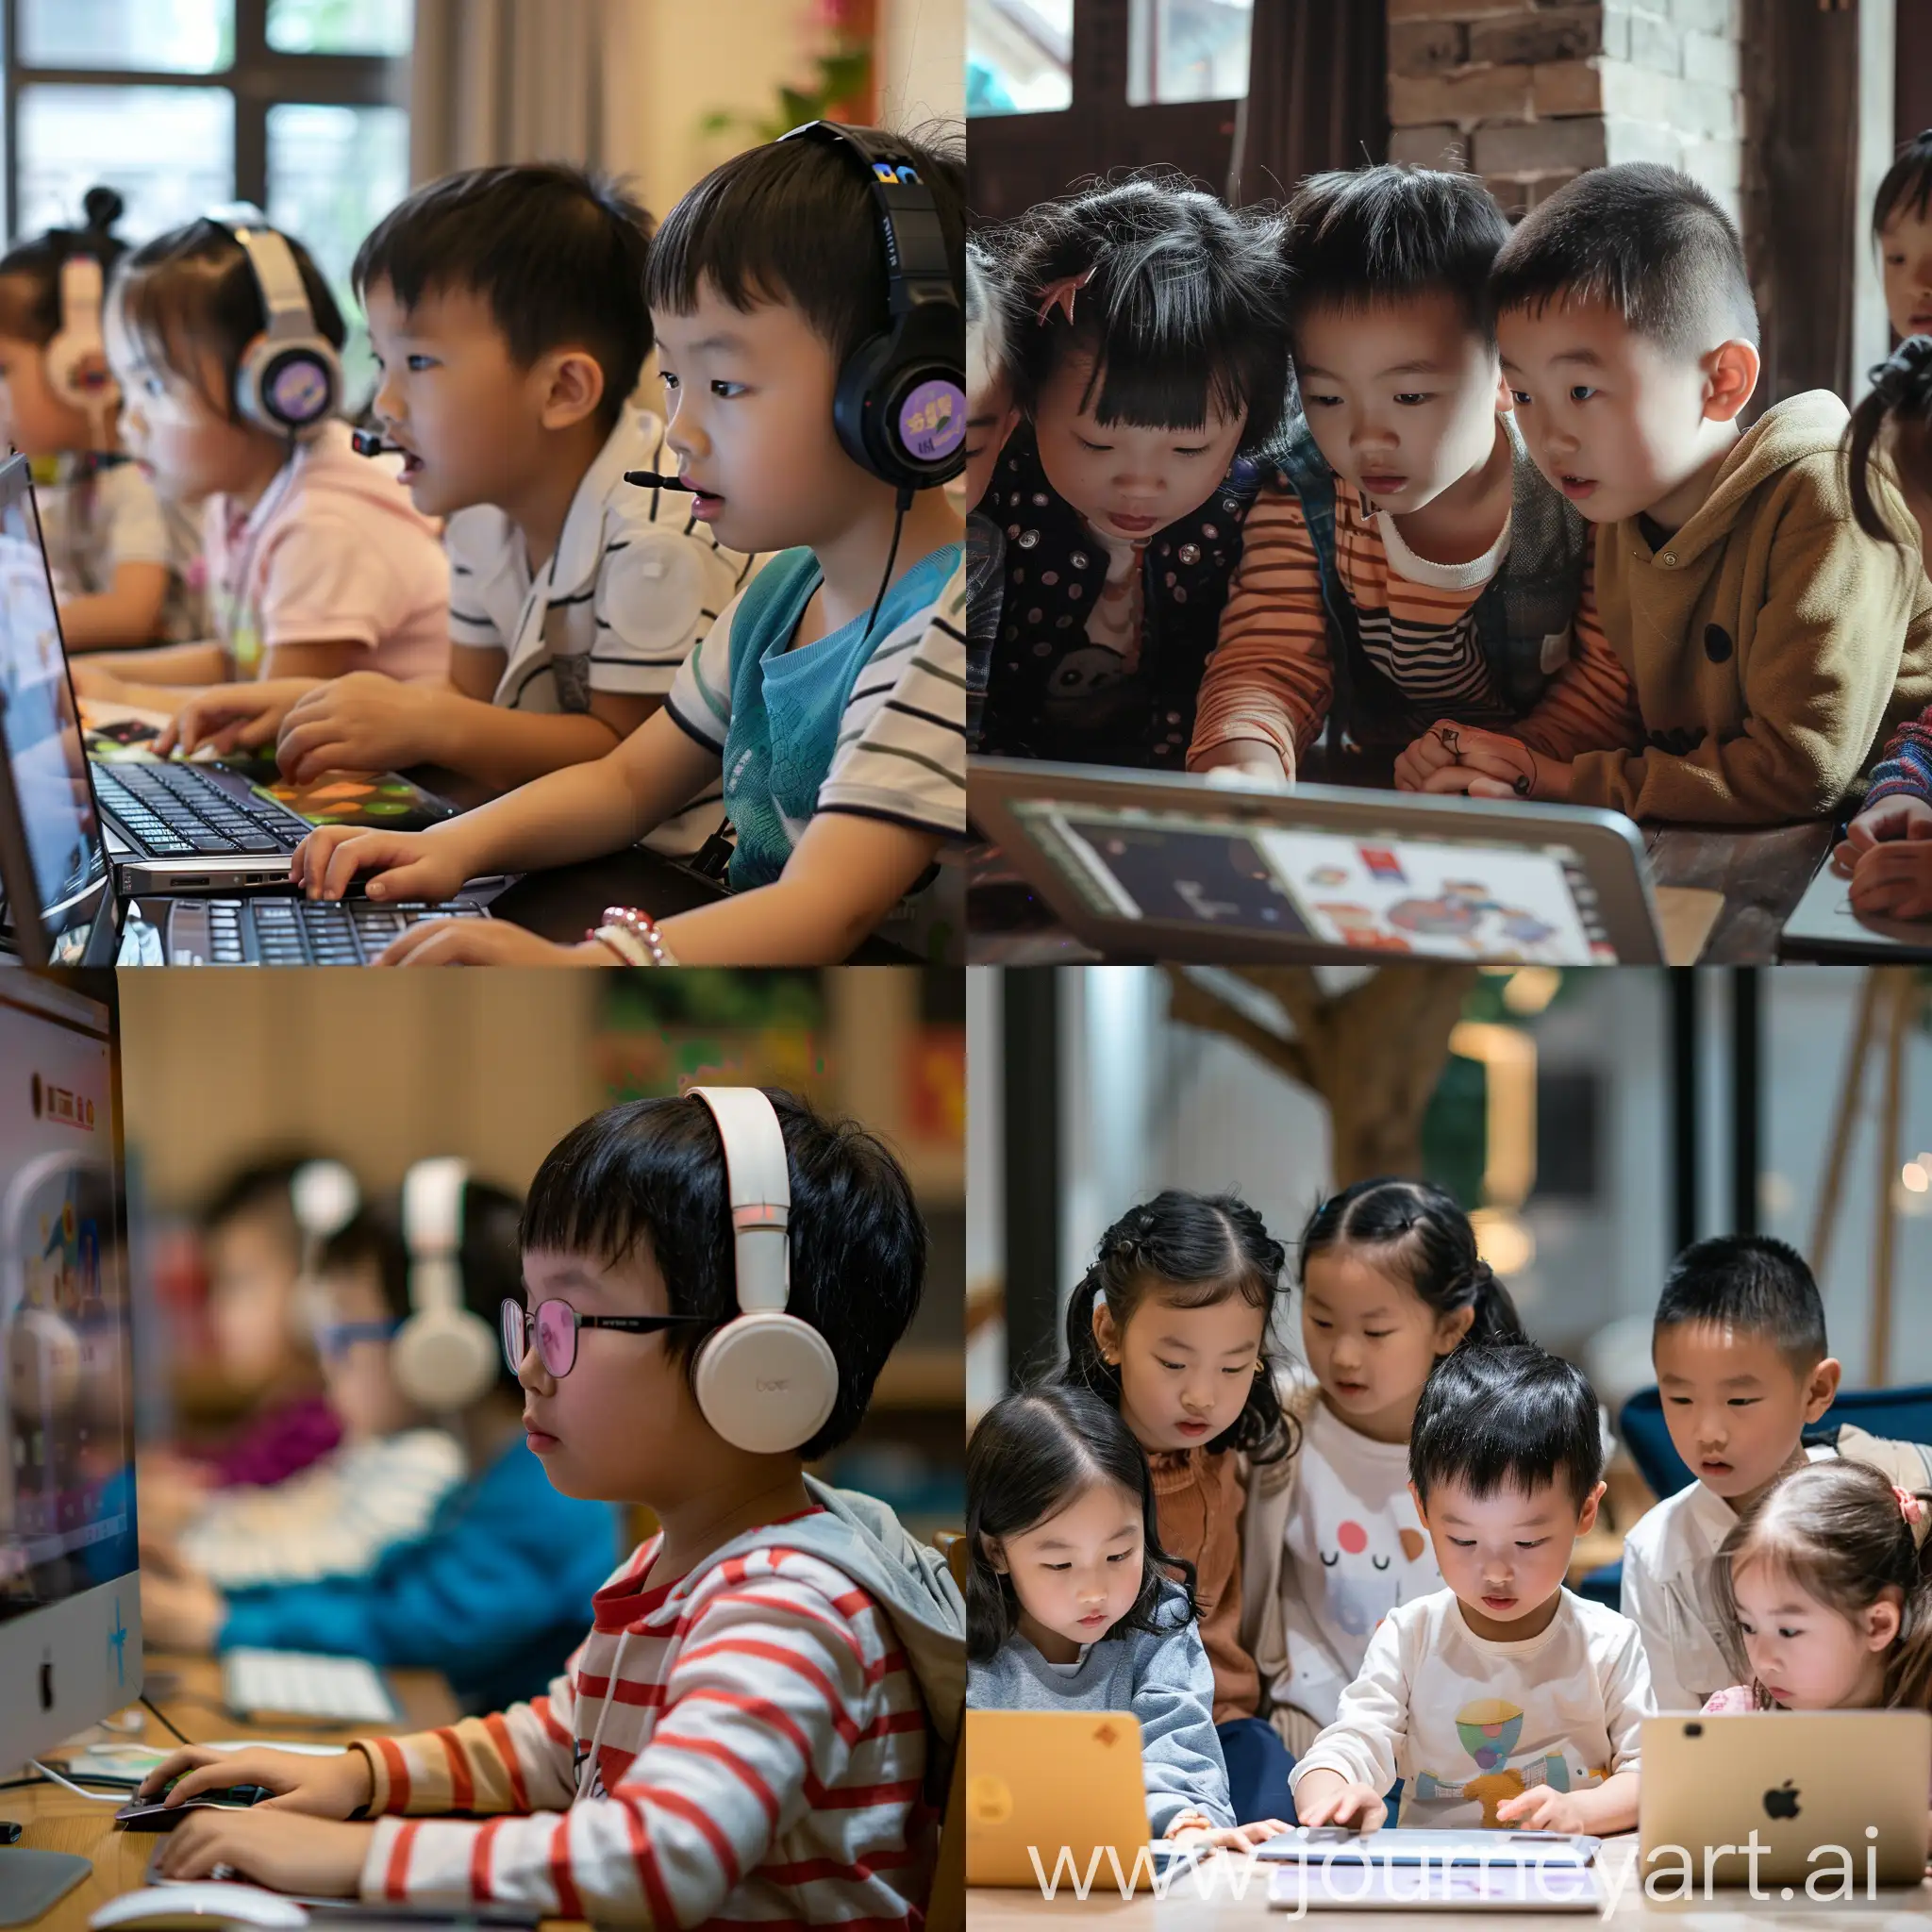 国际爱学习社群，中国小朋友和美国小朋友，10人左右，一起通过互联网学习高质量的教育软件和资源